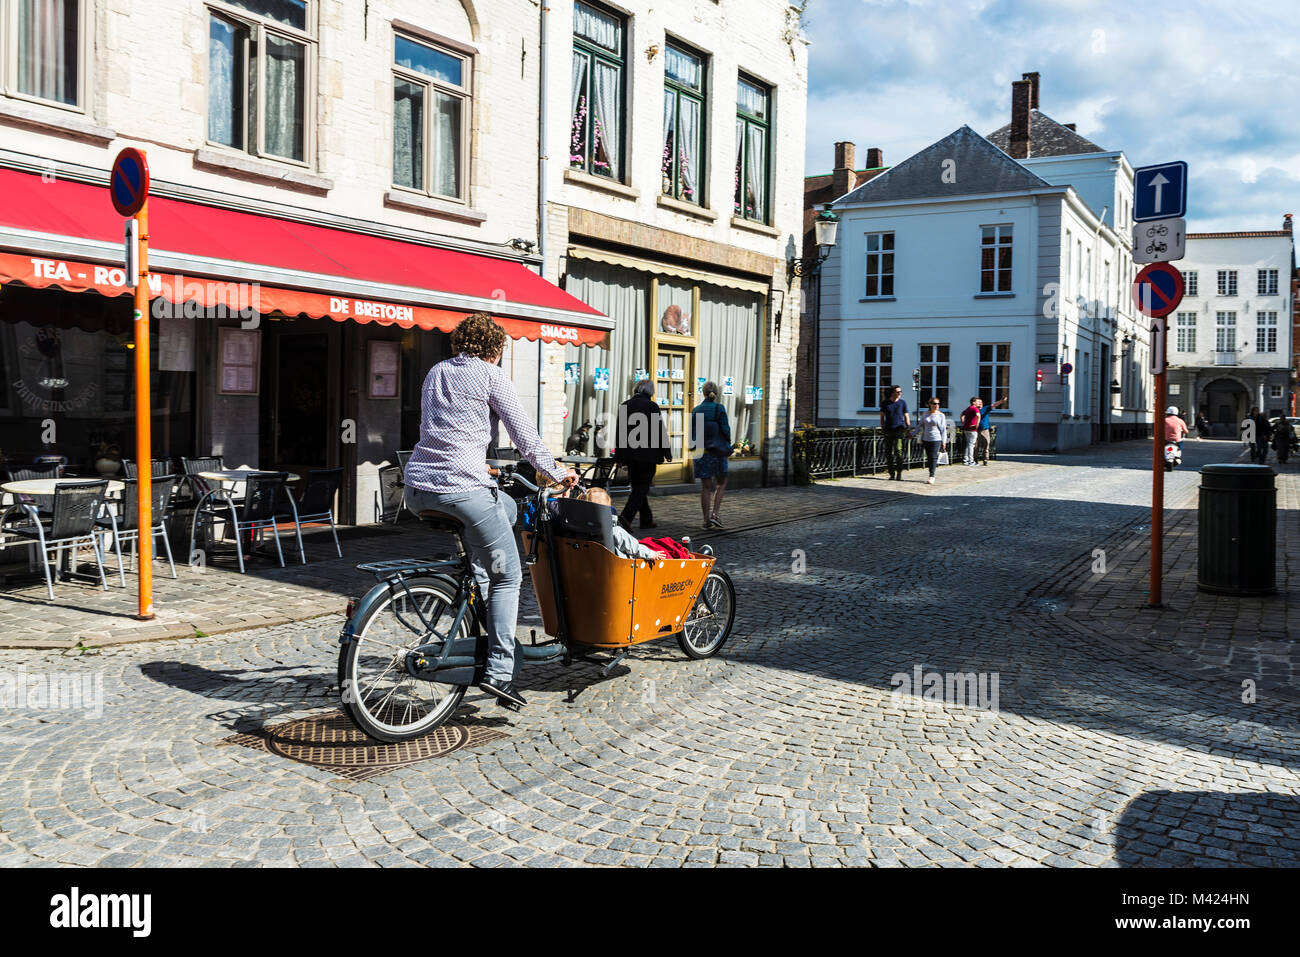 Bruges, Belgique - 1 septembre 2017 : Rue avec personnes à pied et une femme à vélo avec un Babboe location avec les enfants dans la ville médiévale de Bruges Banque D'Images